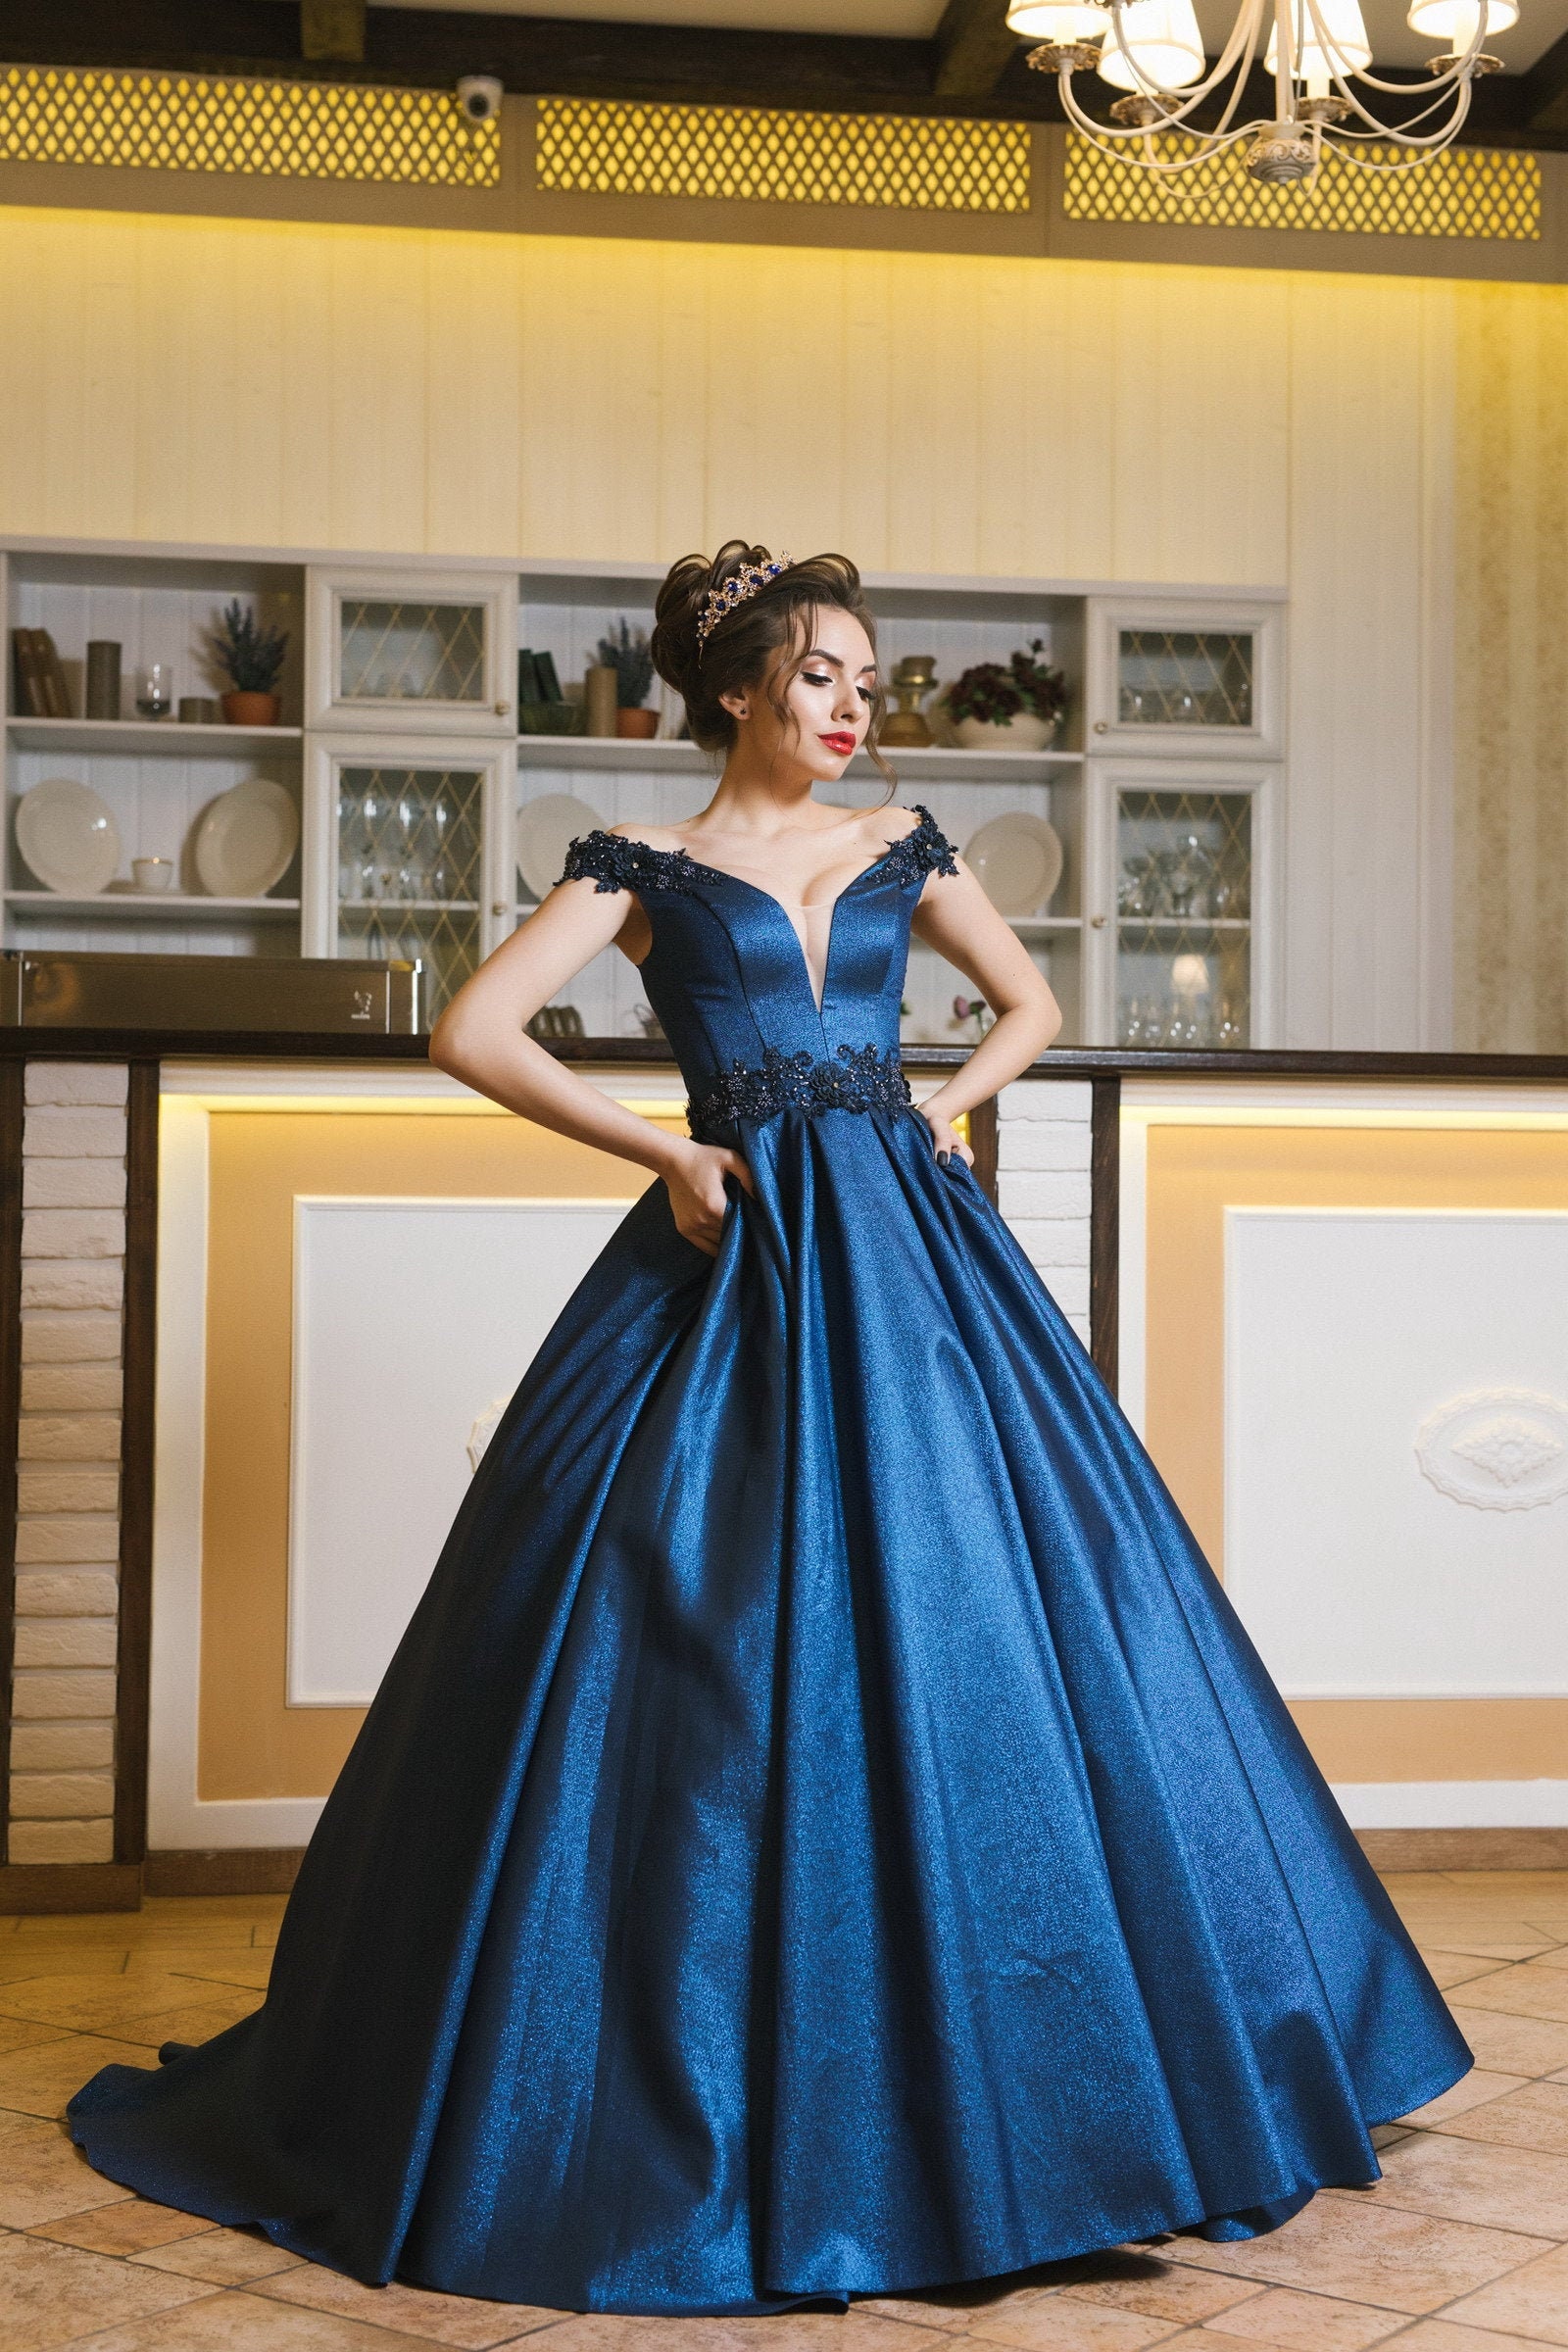 Electric Blue Silk Georgette Midi Dress - Women - Ready-to-Wear